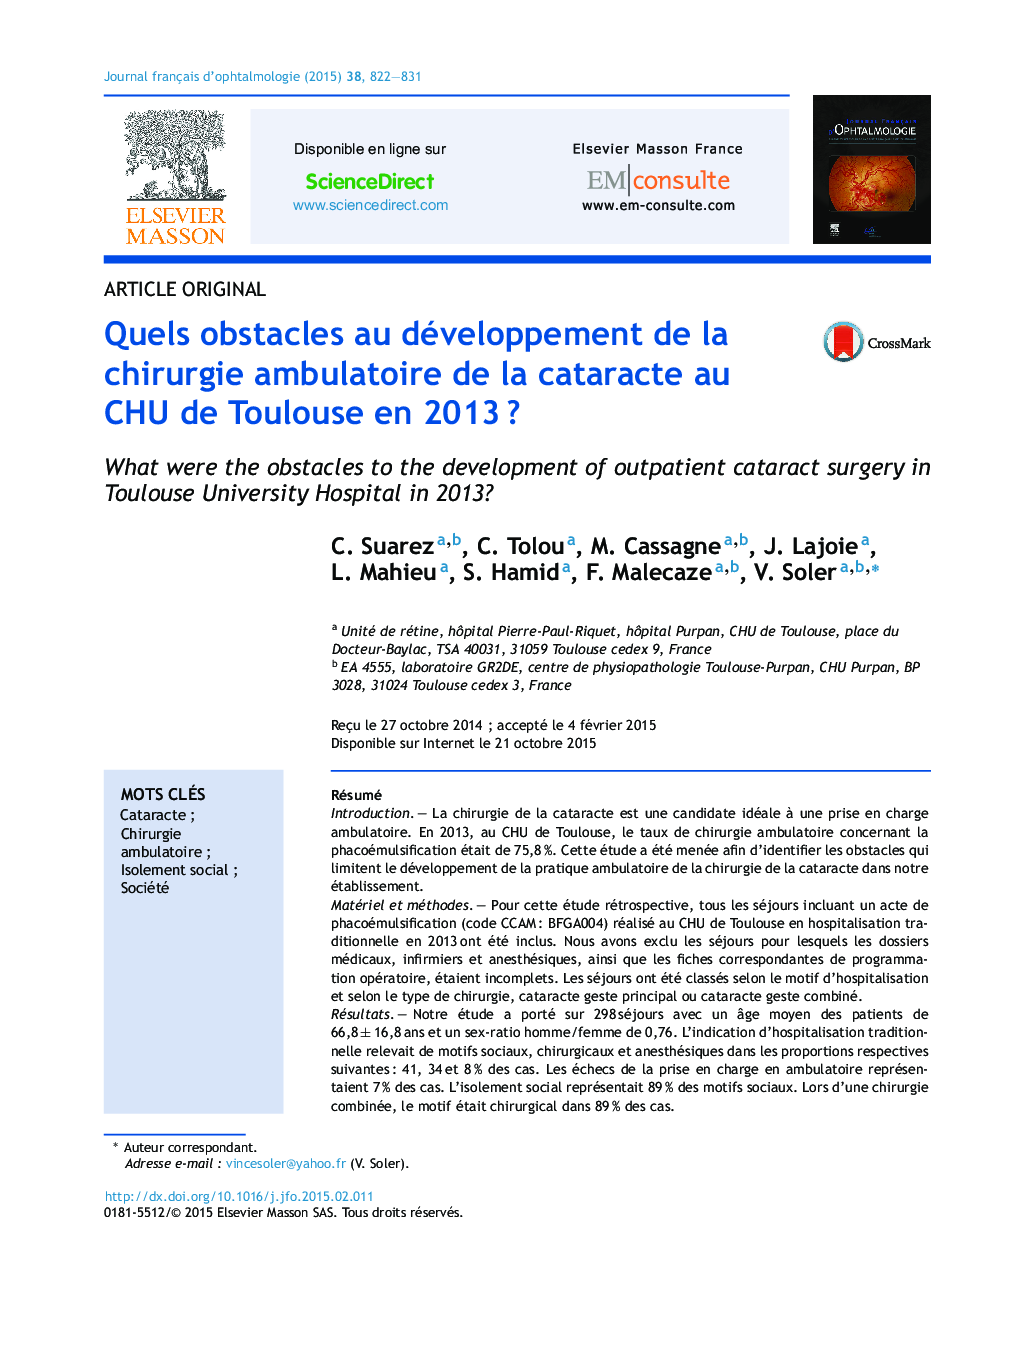 Quels obstacles au développement de la chirurgie ambulatoire de la cataracte au CHU de Toulouse en 2013Â ?